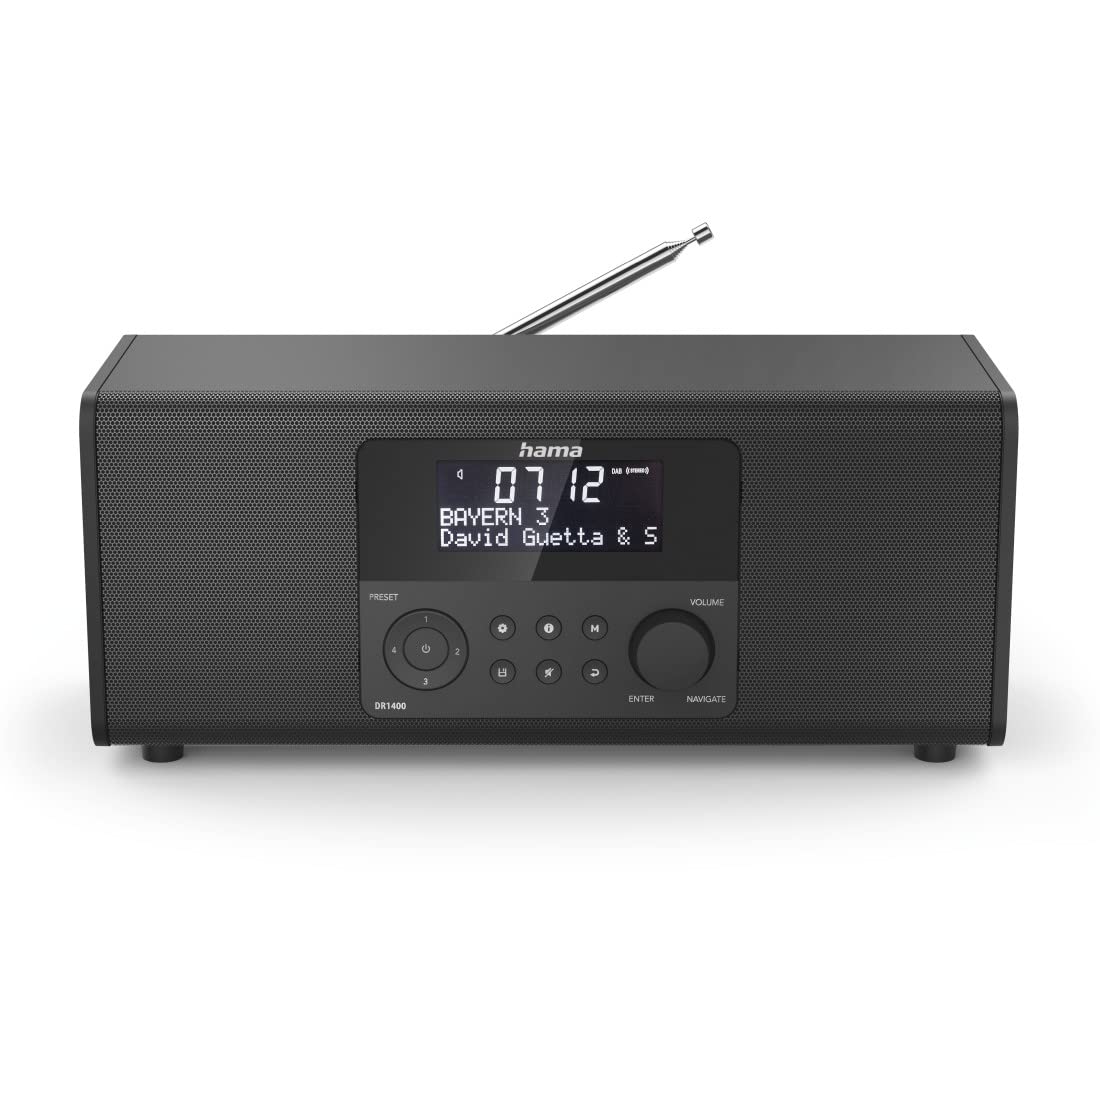 Hama Digitalradio DR1400 (DAB/DAB+/FM, Radio-Wecker mit 2 Alarmzeiten/Snooze/Timer, 4 Stationstasten, Stereo, beleuchtetes Display, kompaktes Digital-Radio) schwarz